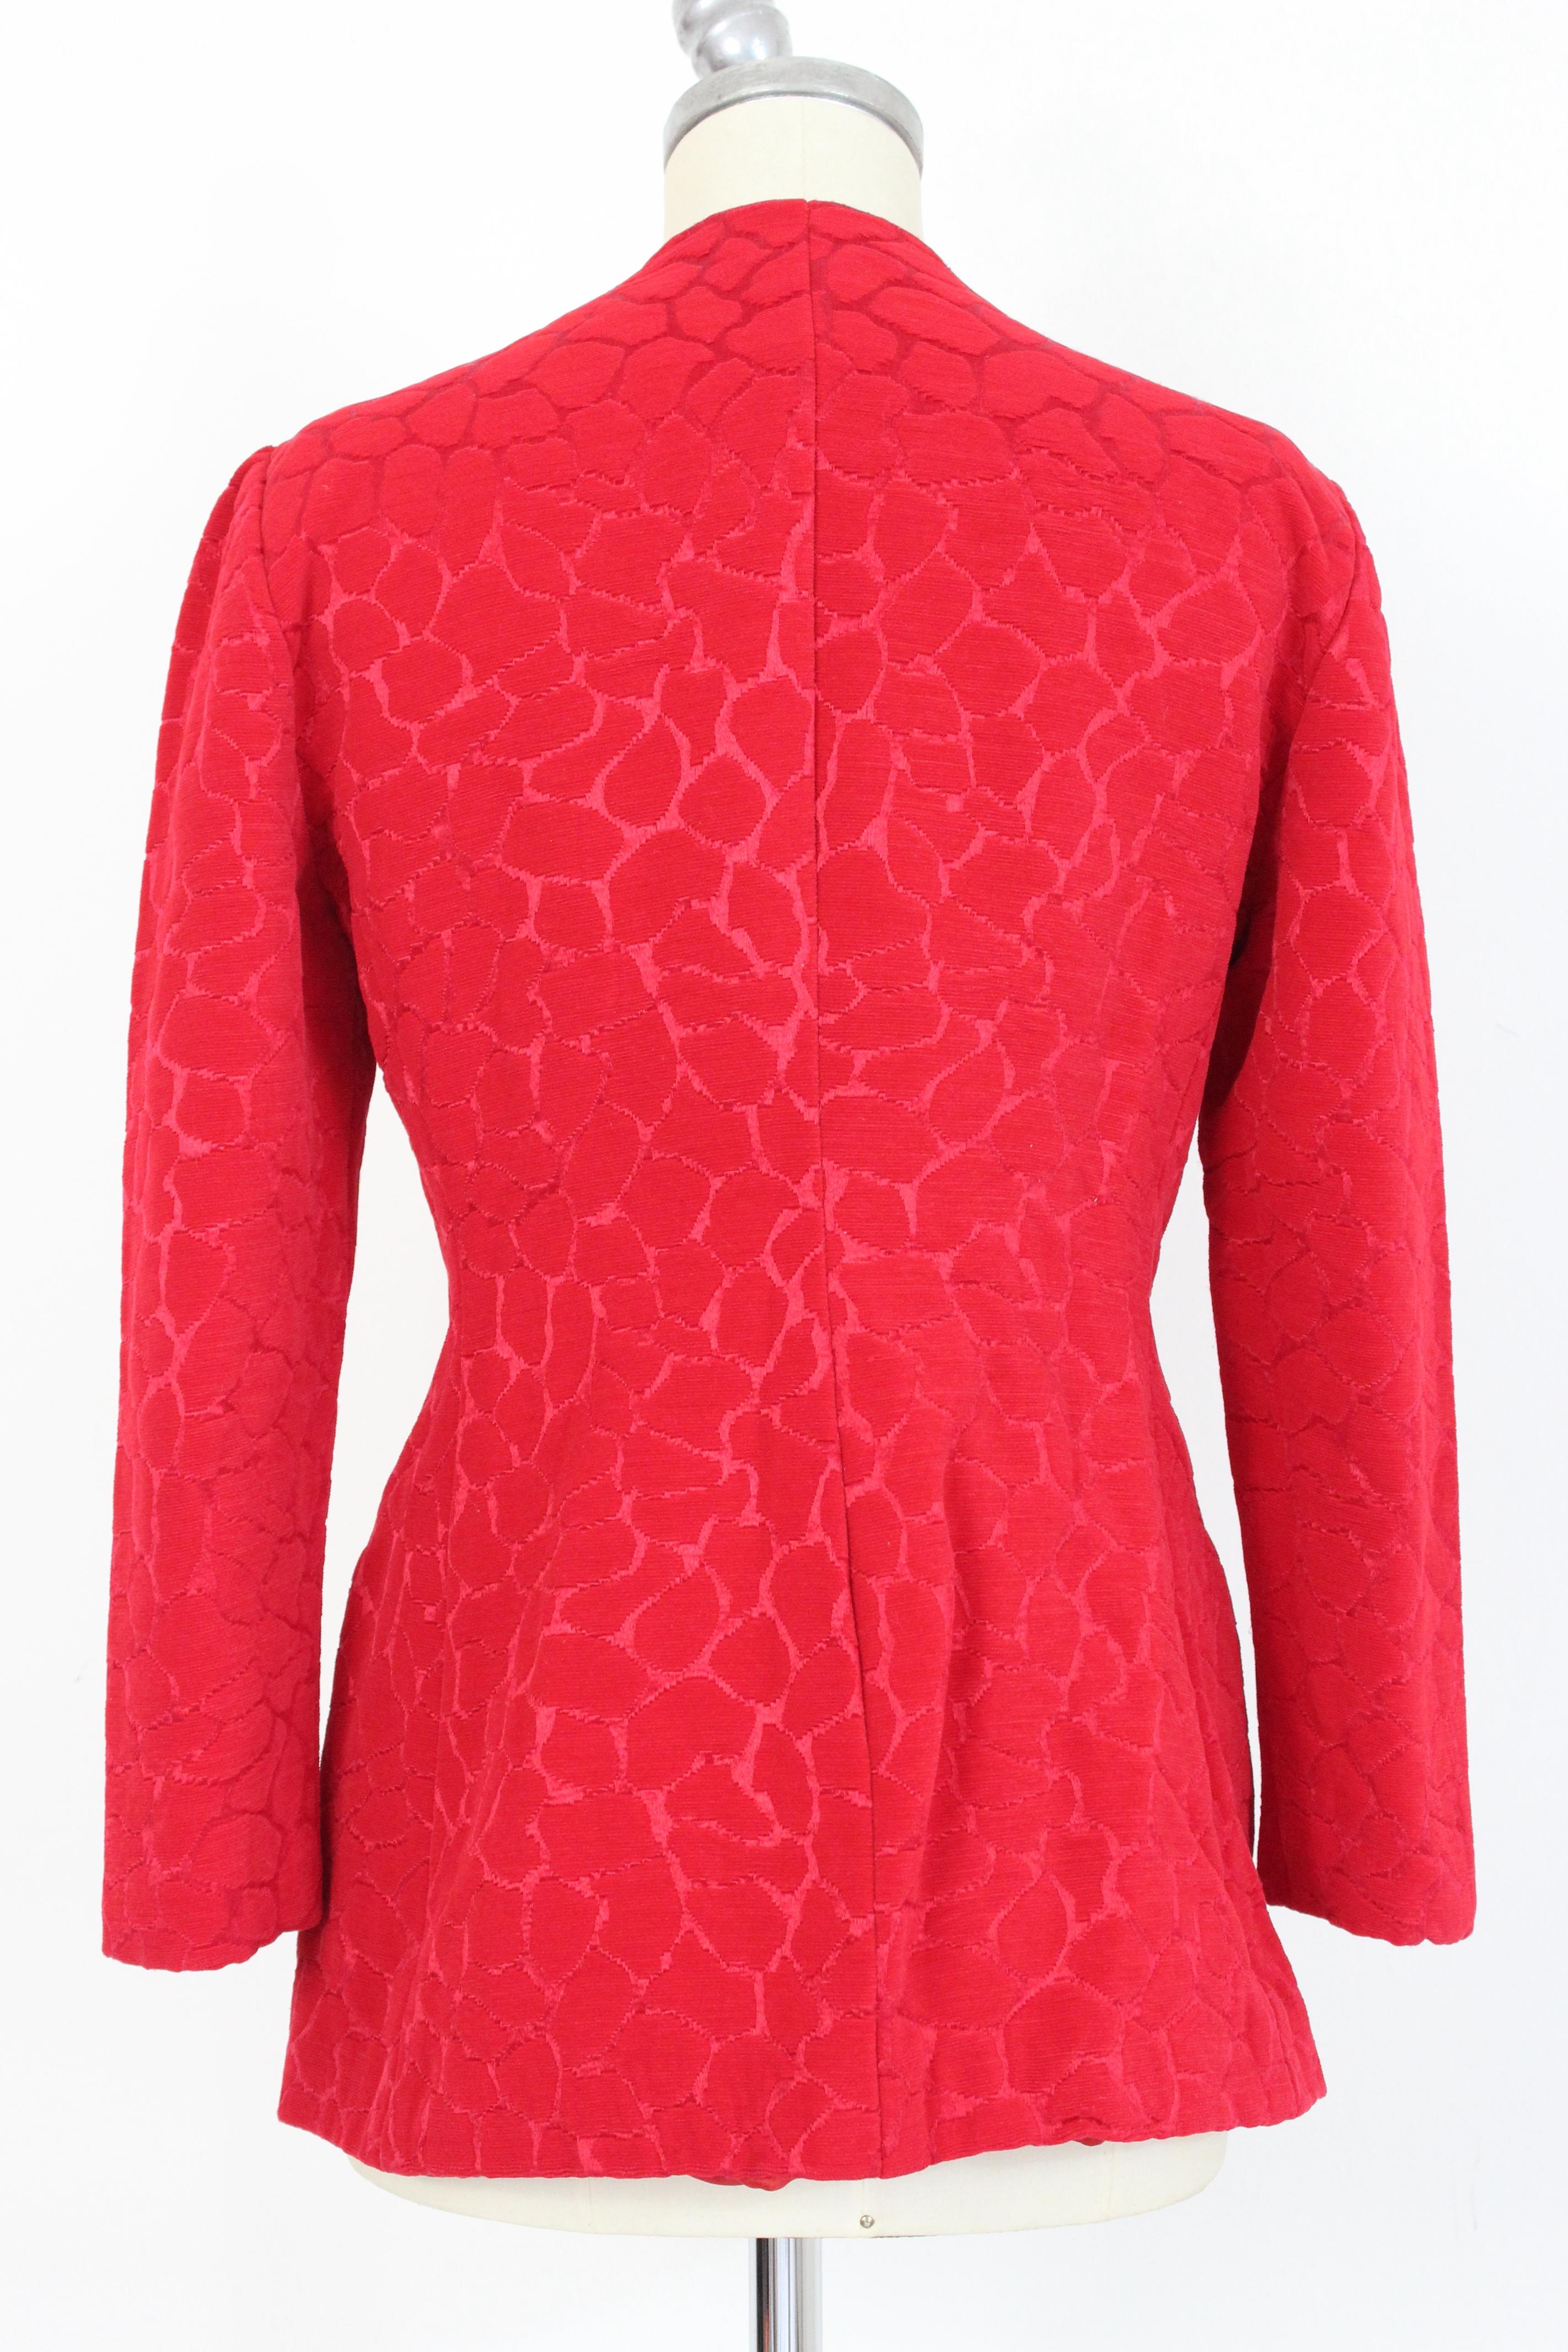 Gai Mattiolo Red Silk Damask Evening Skirt Suit 4